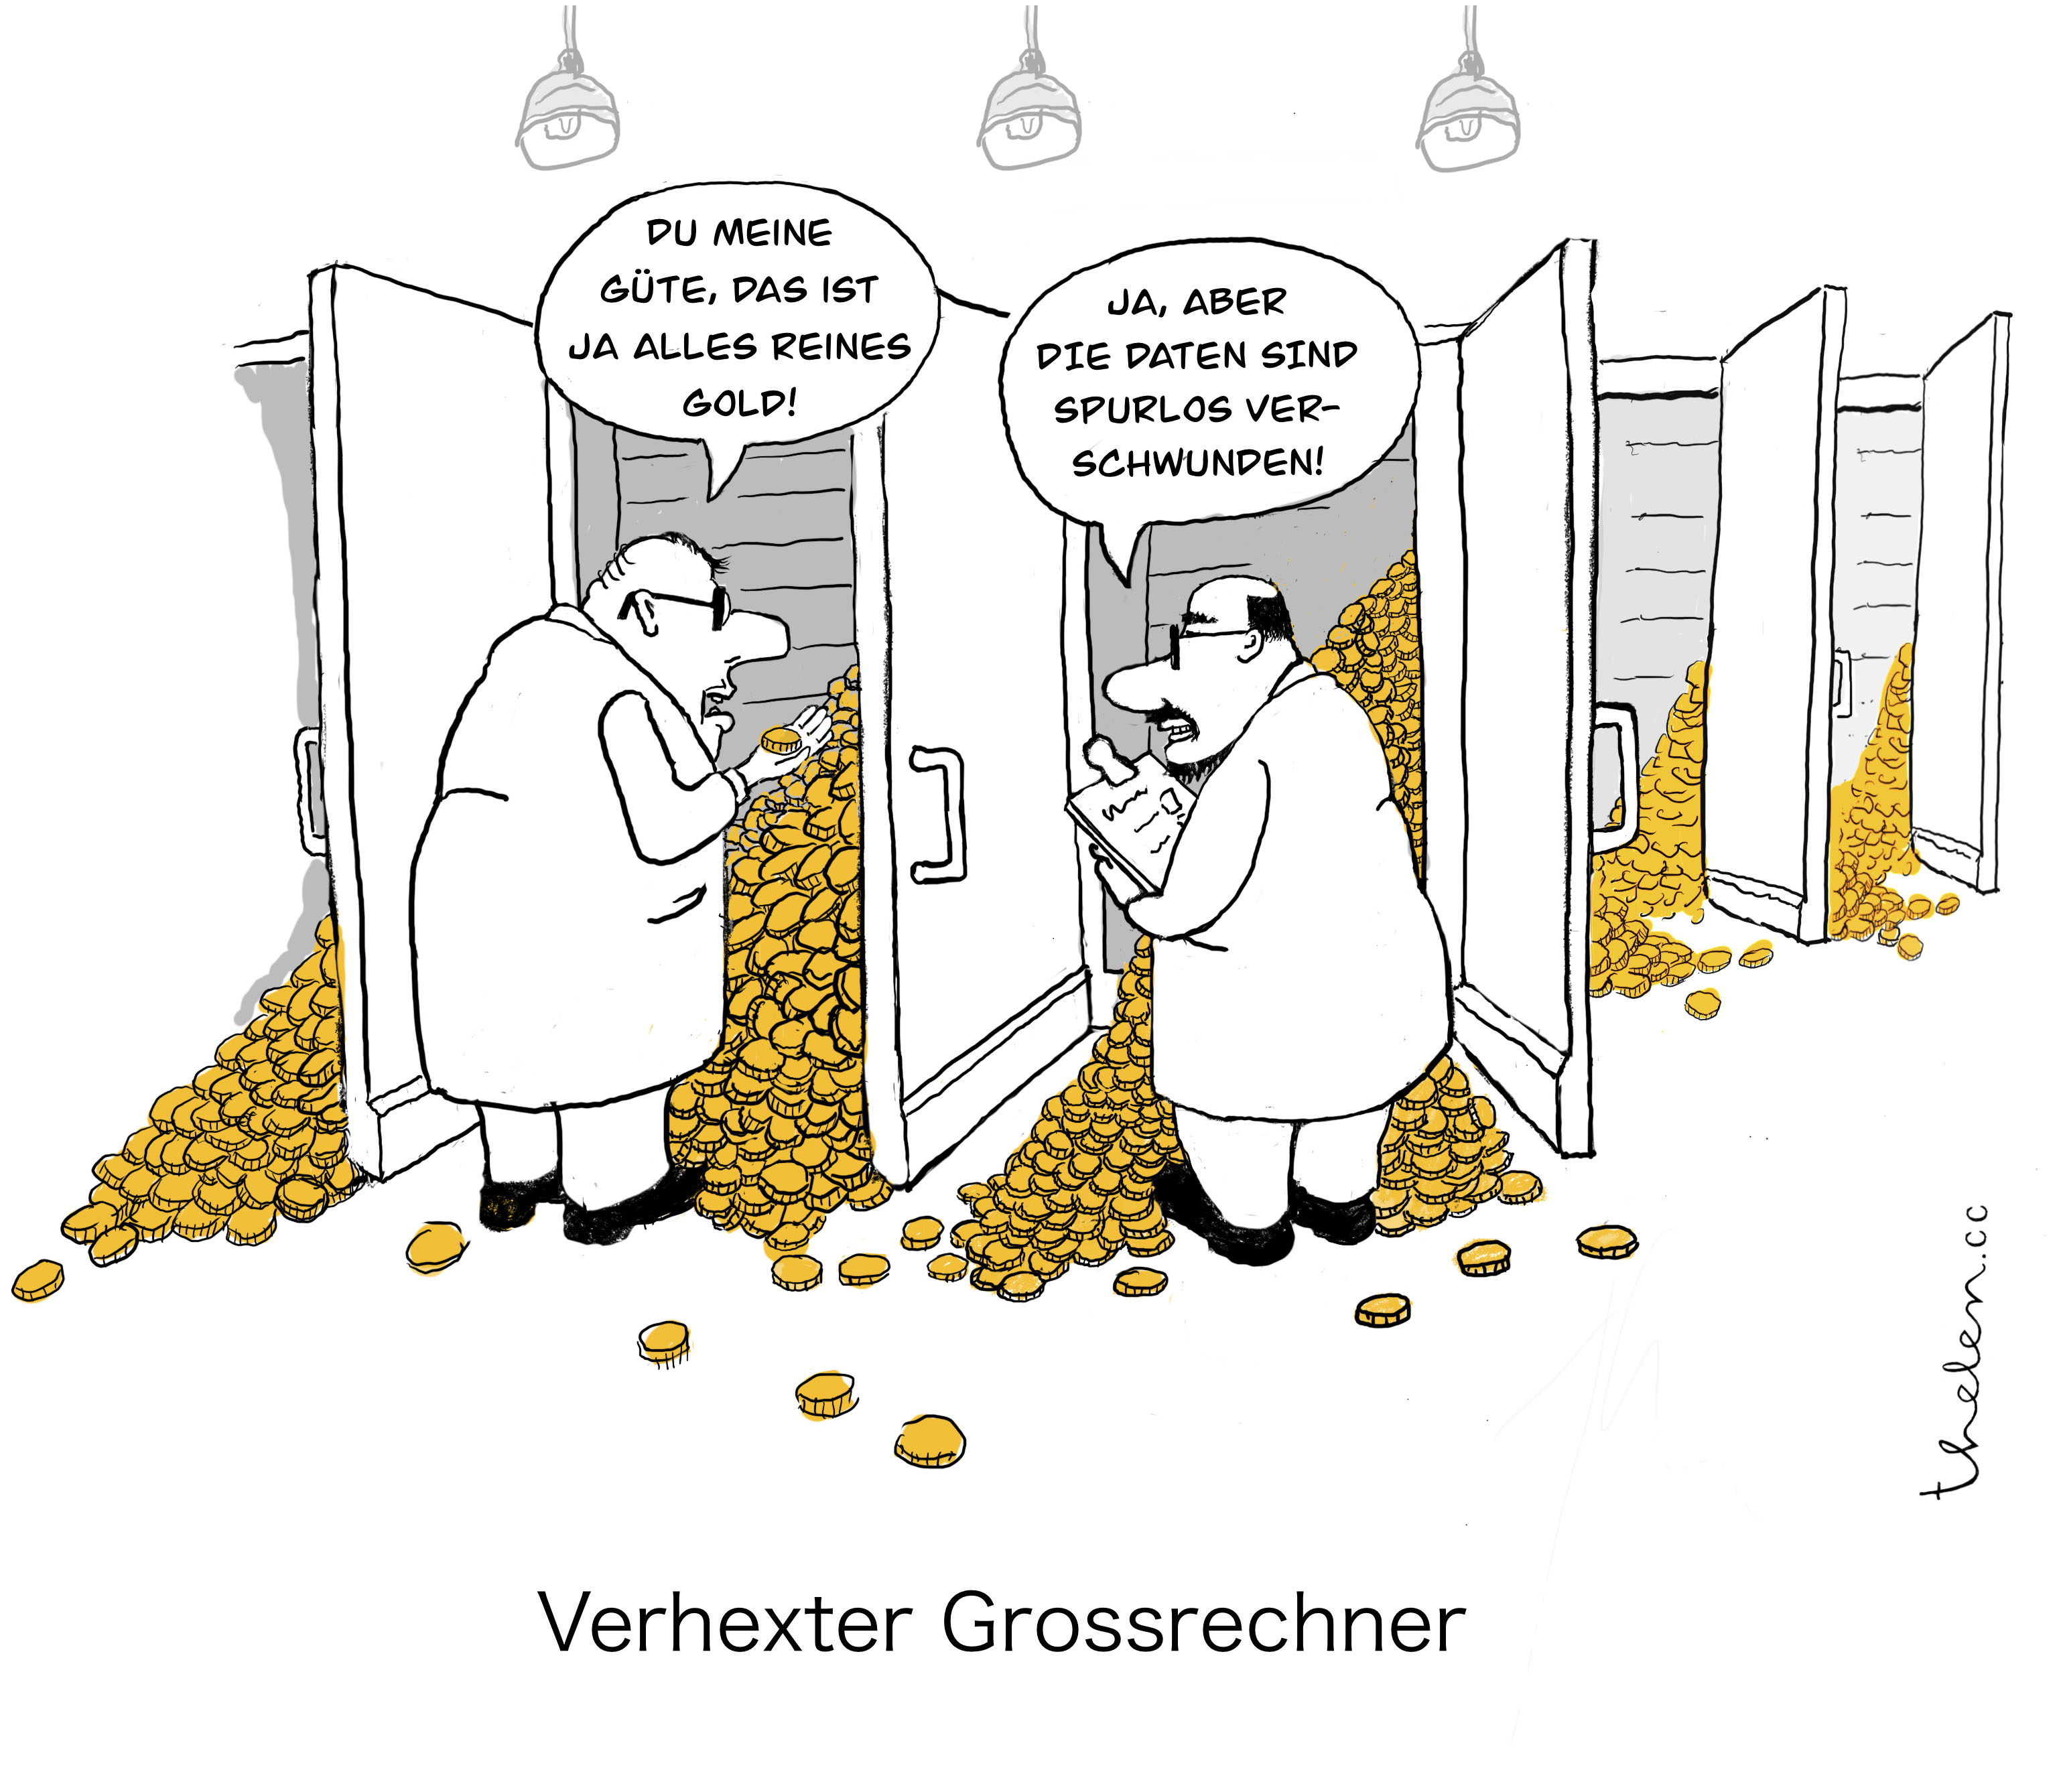 Verhexter Grossrechner